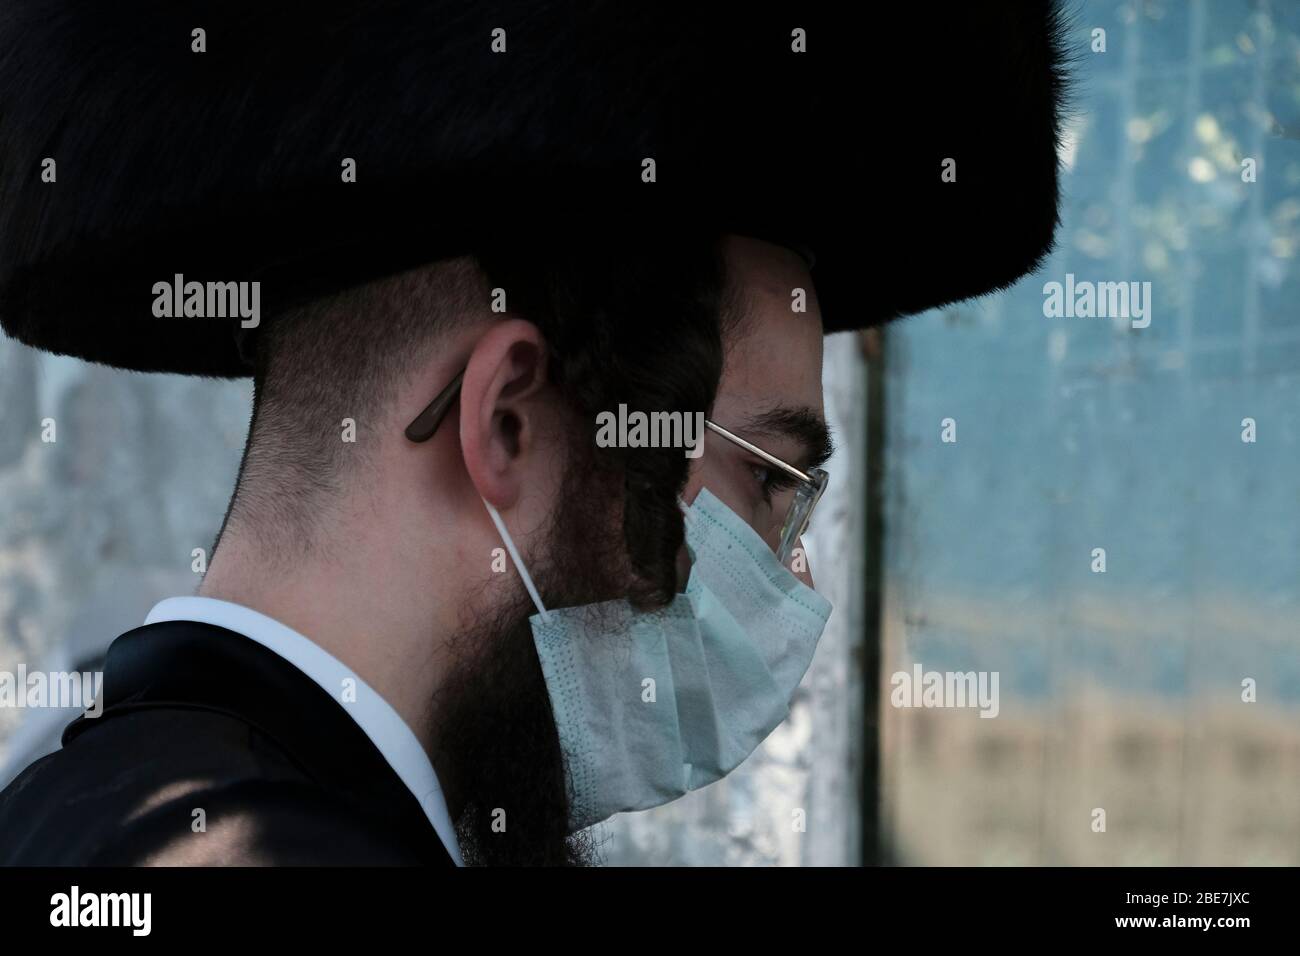 Ein ultra orthodoxer Jude, der Gesichtsmaske trägt, weil die COVID-19-Coronavirus-Pandemie in Mea Shearim als Ultra-orthodoxes Viertel in Jerusalem bezeichnet wurde. Stockfoto